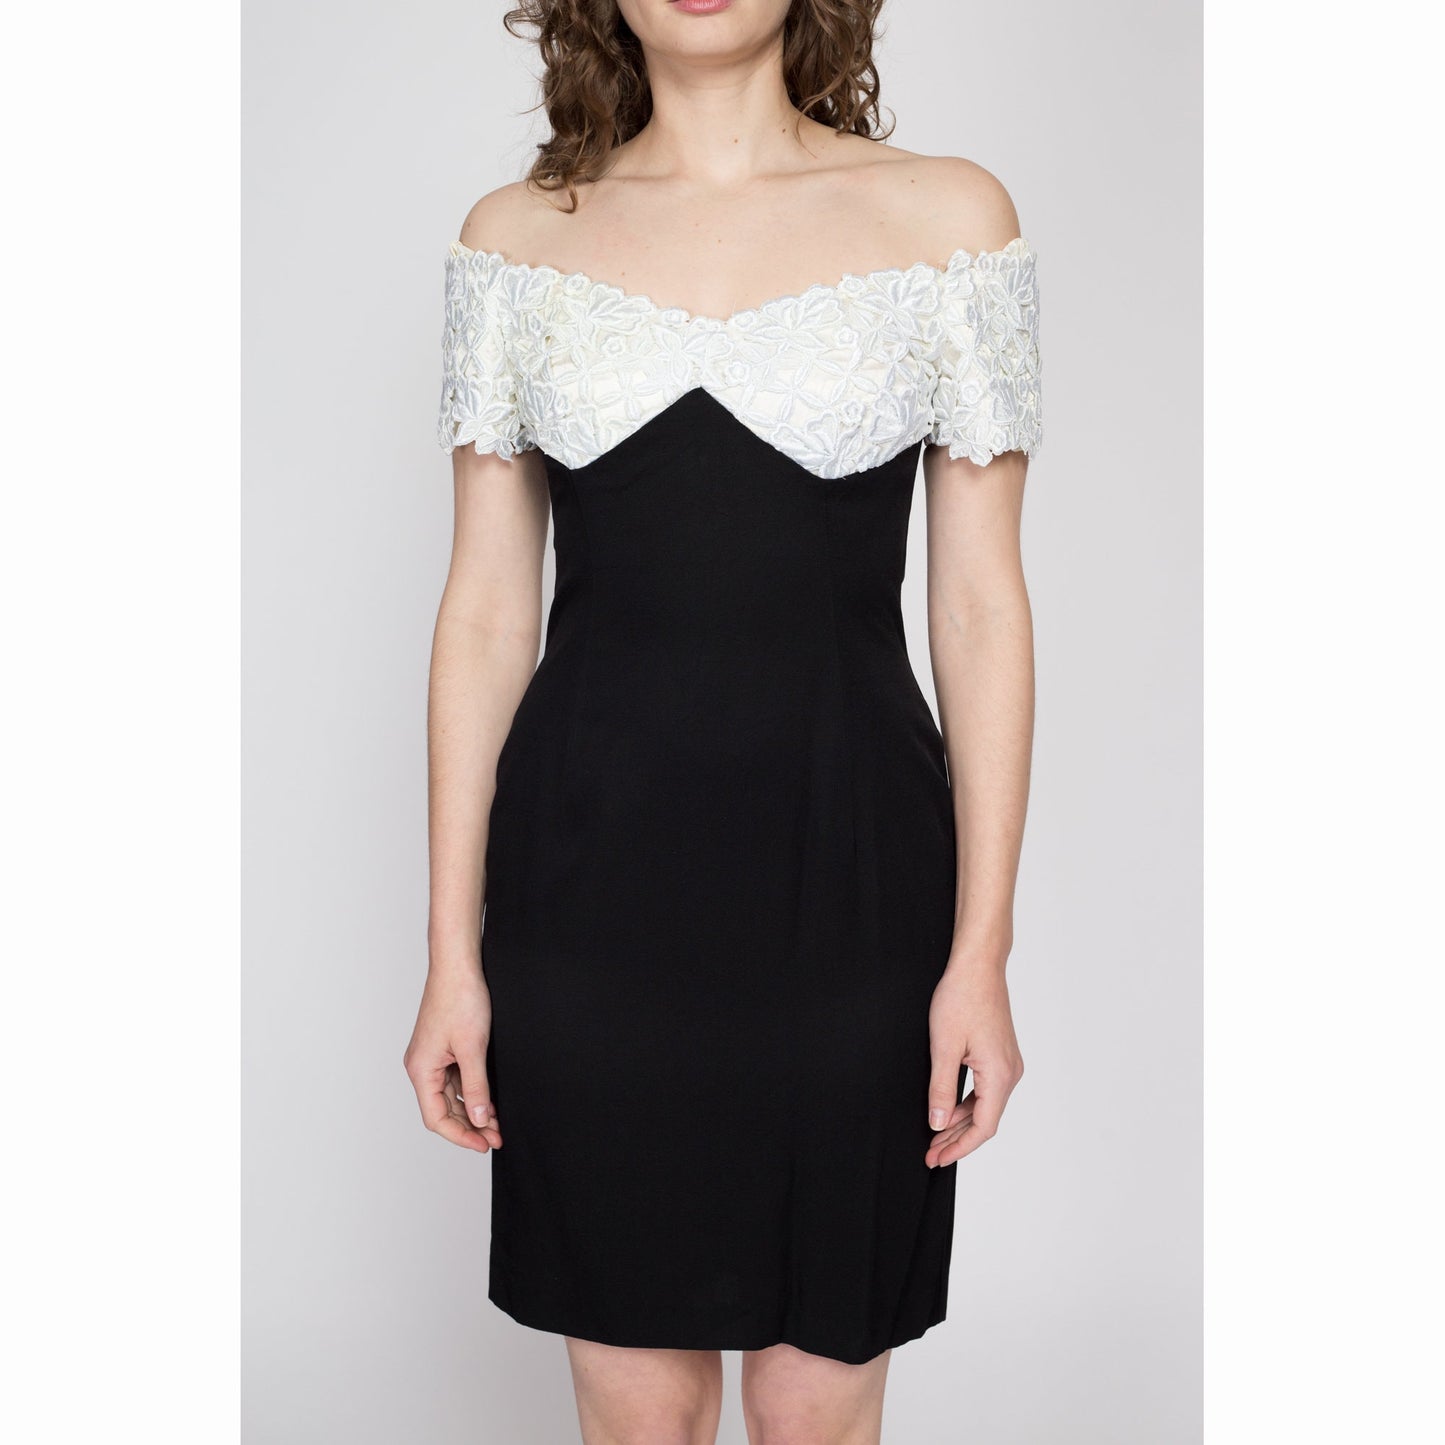 Medium 80s Scott McClintock Black & White Party Dress | Vintage Off Shoulder Sweetheart Neck Lace Trim Mini Dress